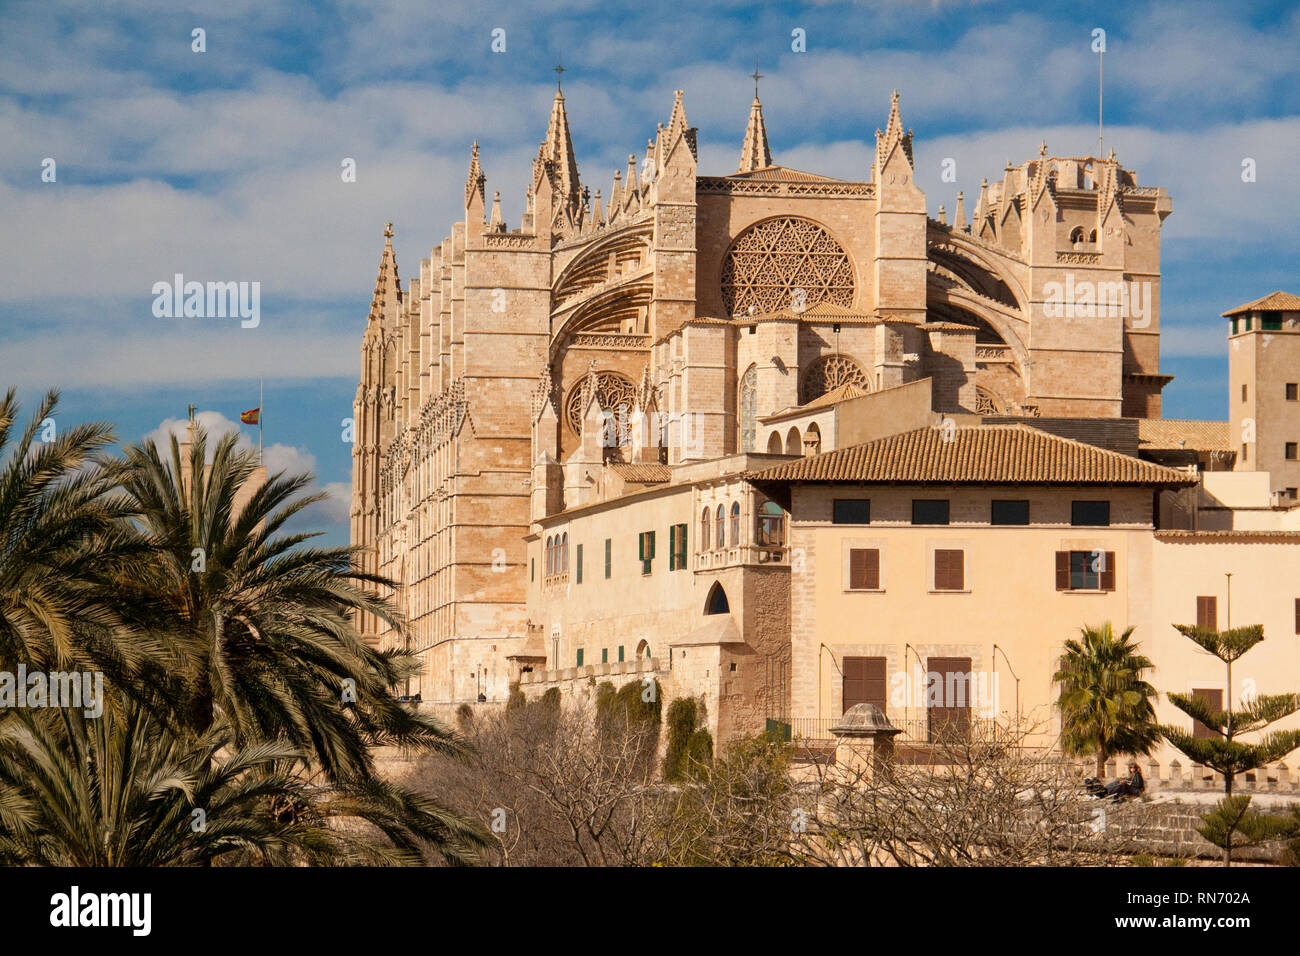 Cattedrale gotica La Seu in Palma de Mallorca, Spagna. Giornata di sole e cielo blu Foto Stock